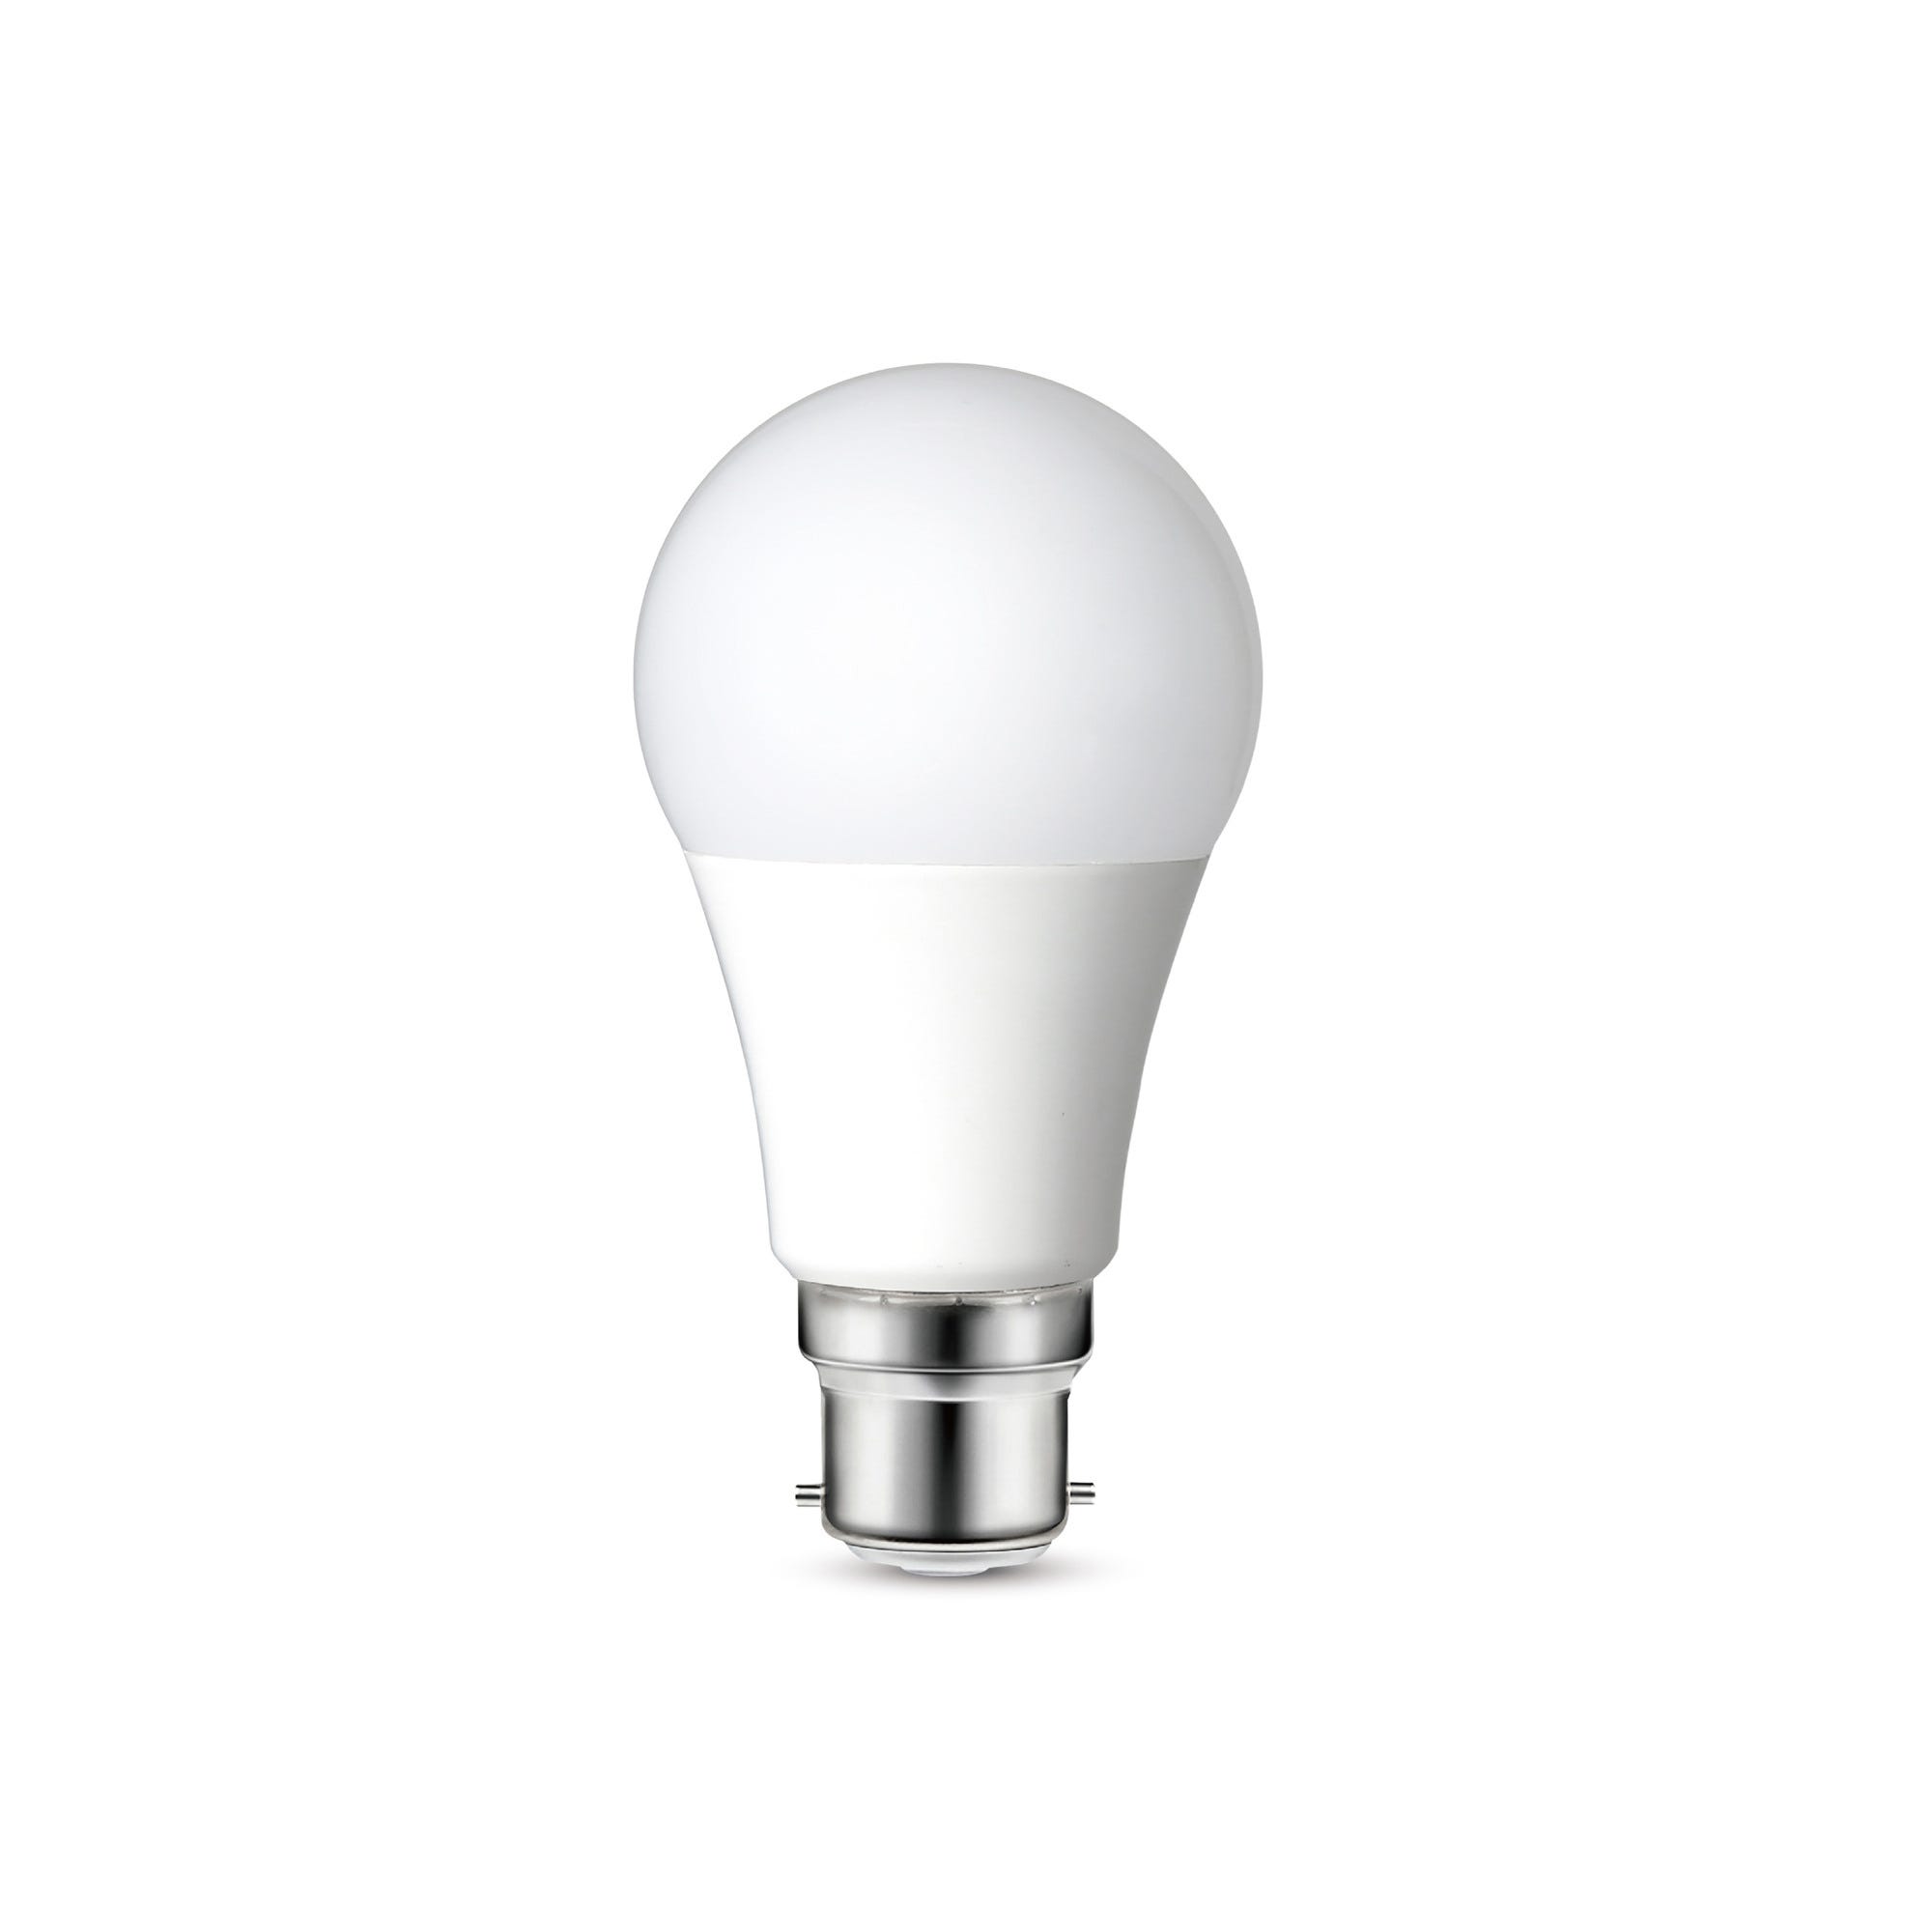 Ampoule LED B22 blanc chaud - ZEIGER 0